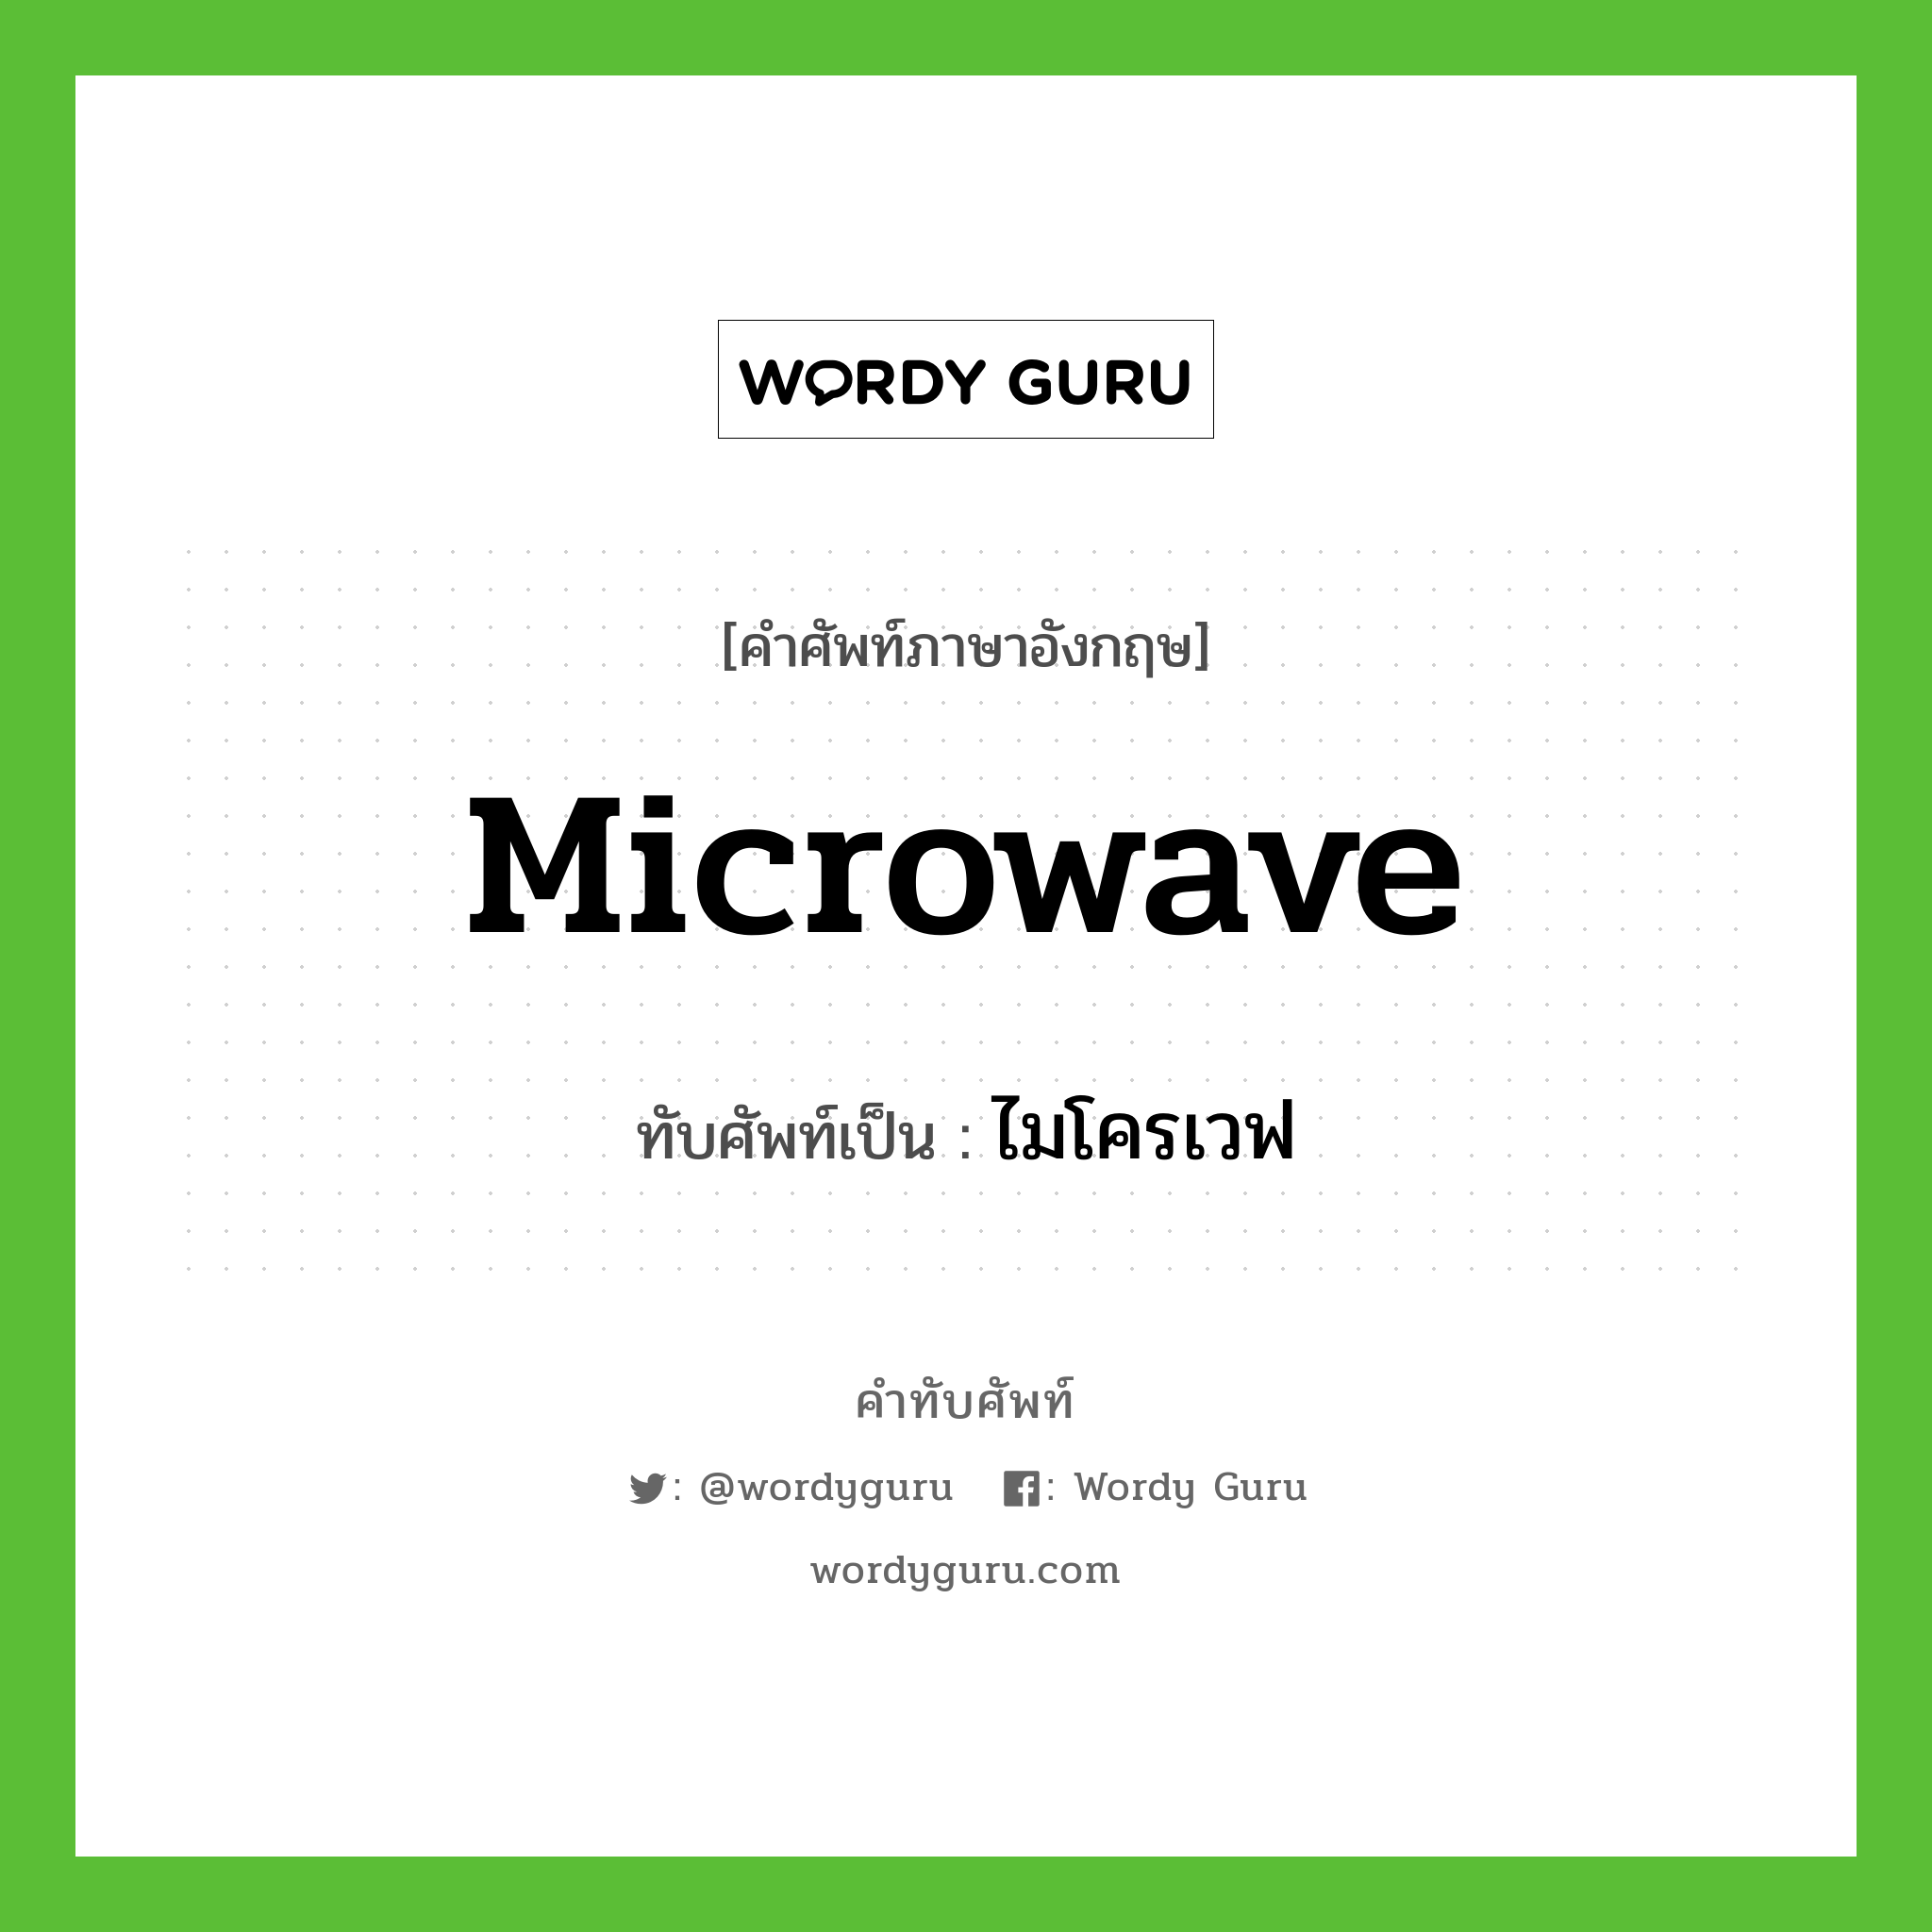 ไมโครเวฟ เขียนอย่างไร?, คำศัพท์ภาษาอังกฤษ ไมโครเวฟ ทับศัพท์เป็น microwave